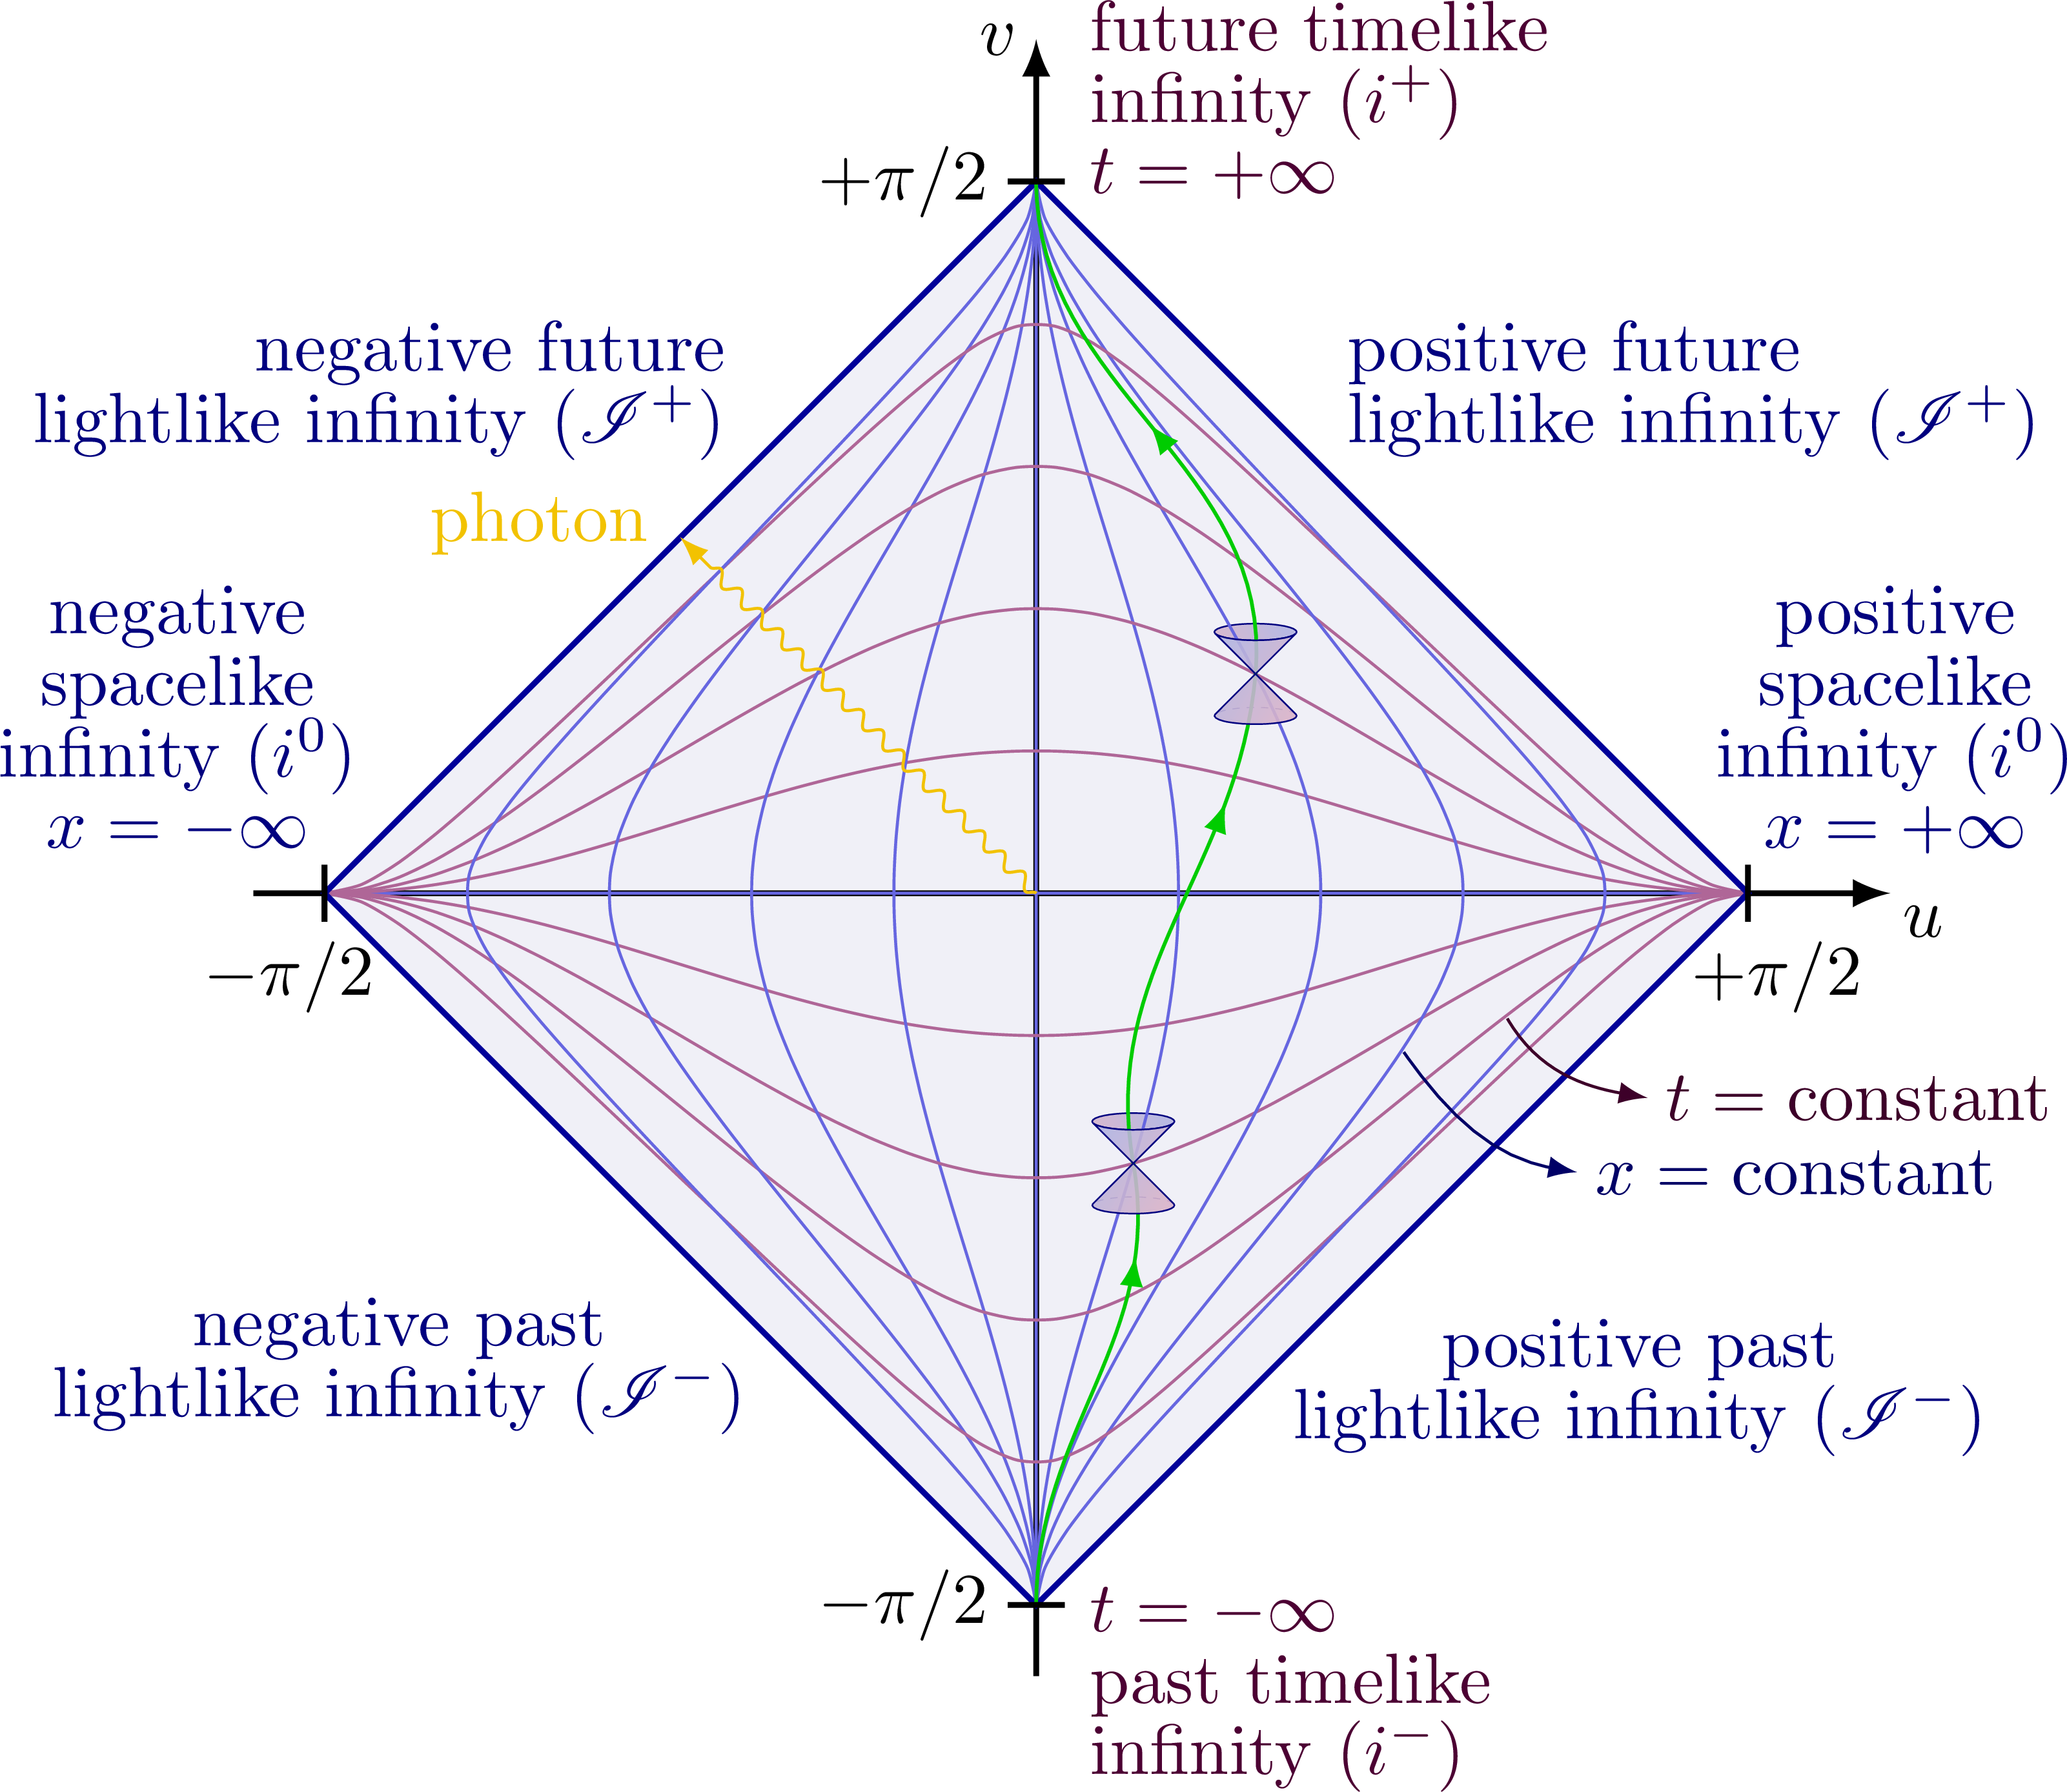 Penrose diagram for Minkowski spacetime.